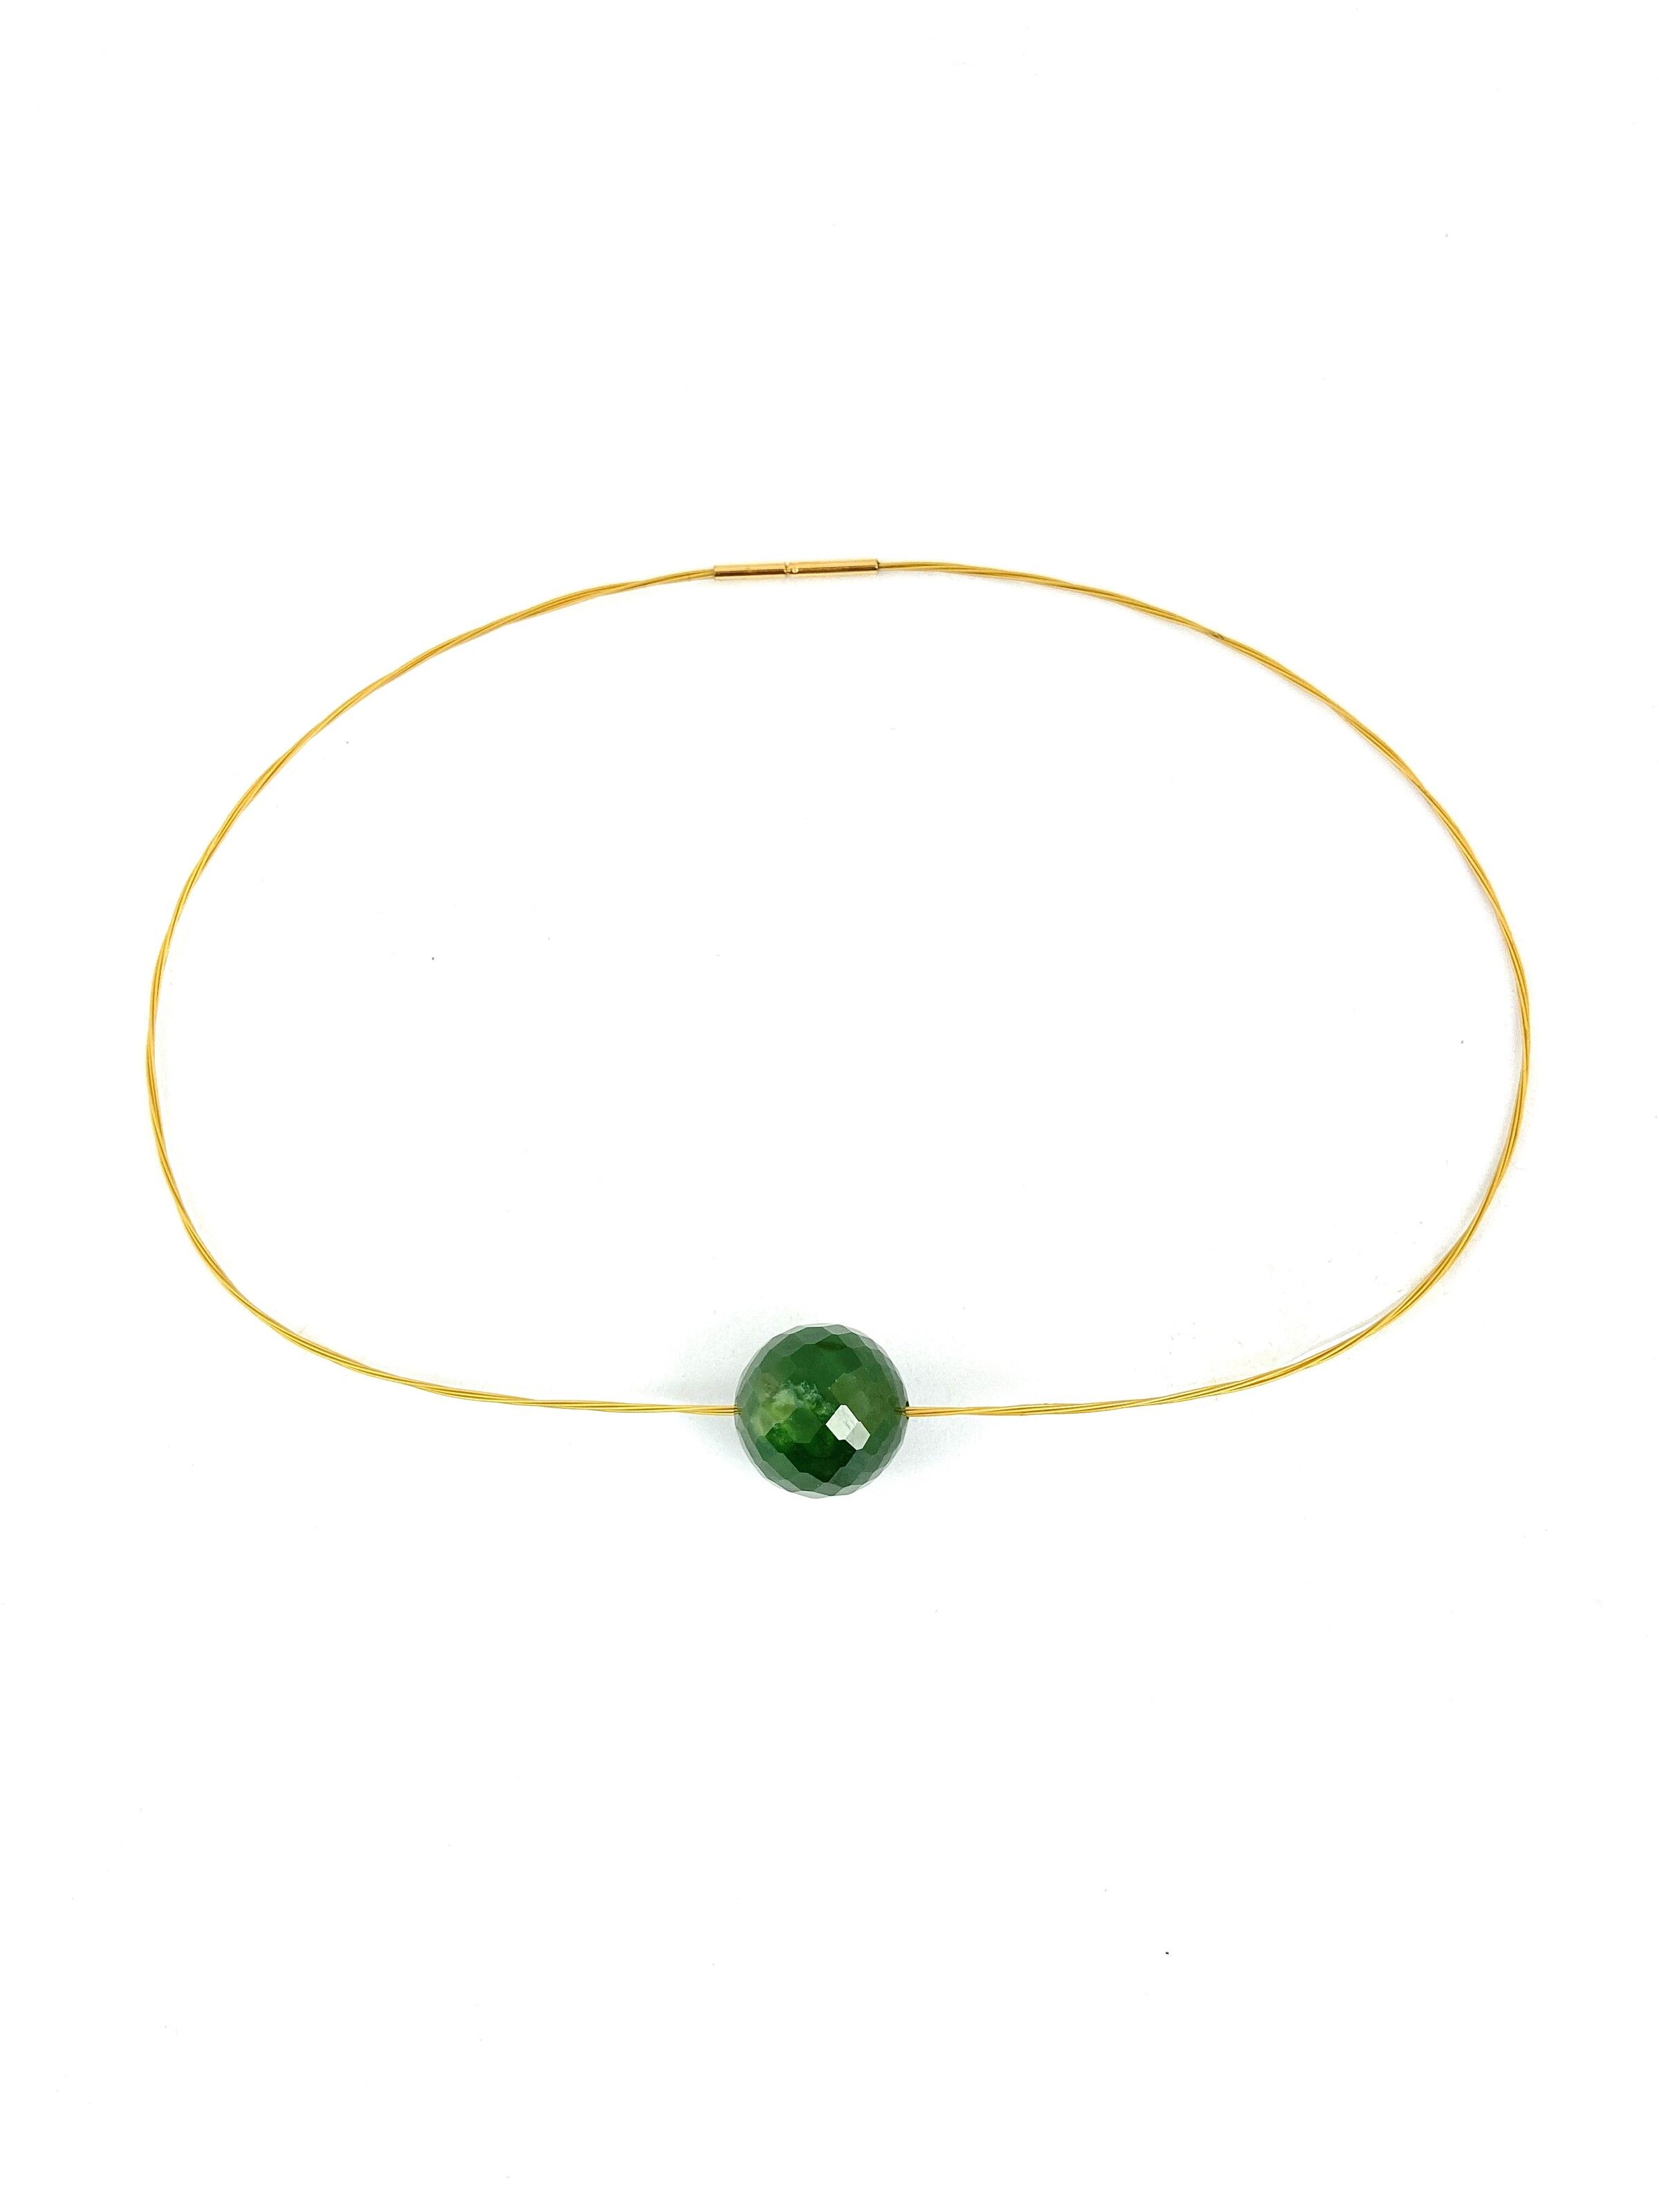 New Zealand Jade (Pounamu) Faceted Bead Necklace